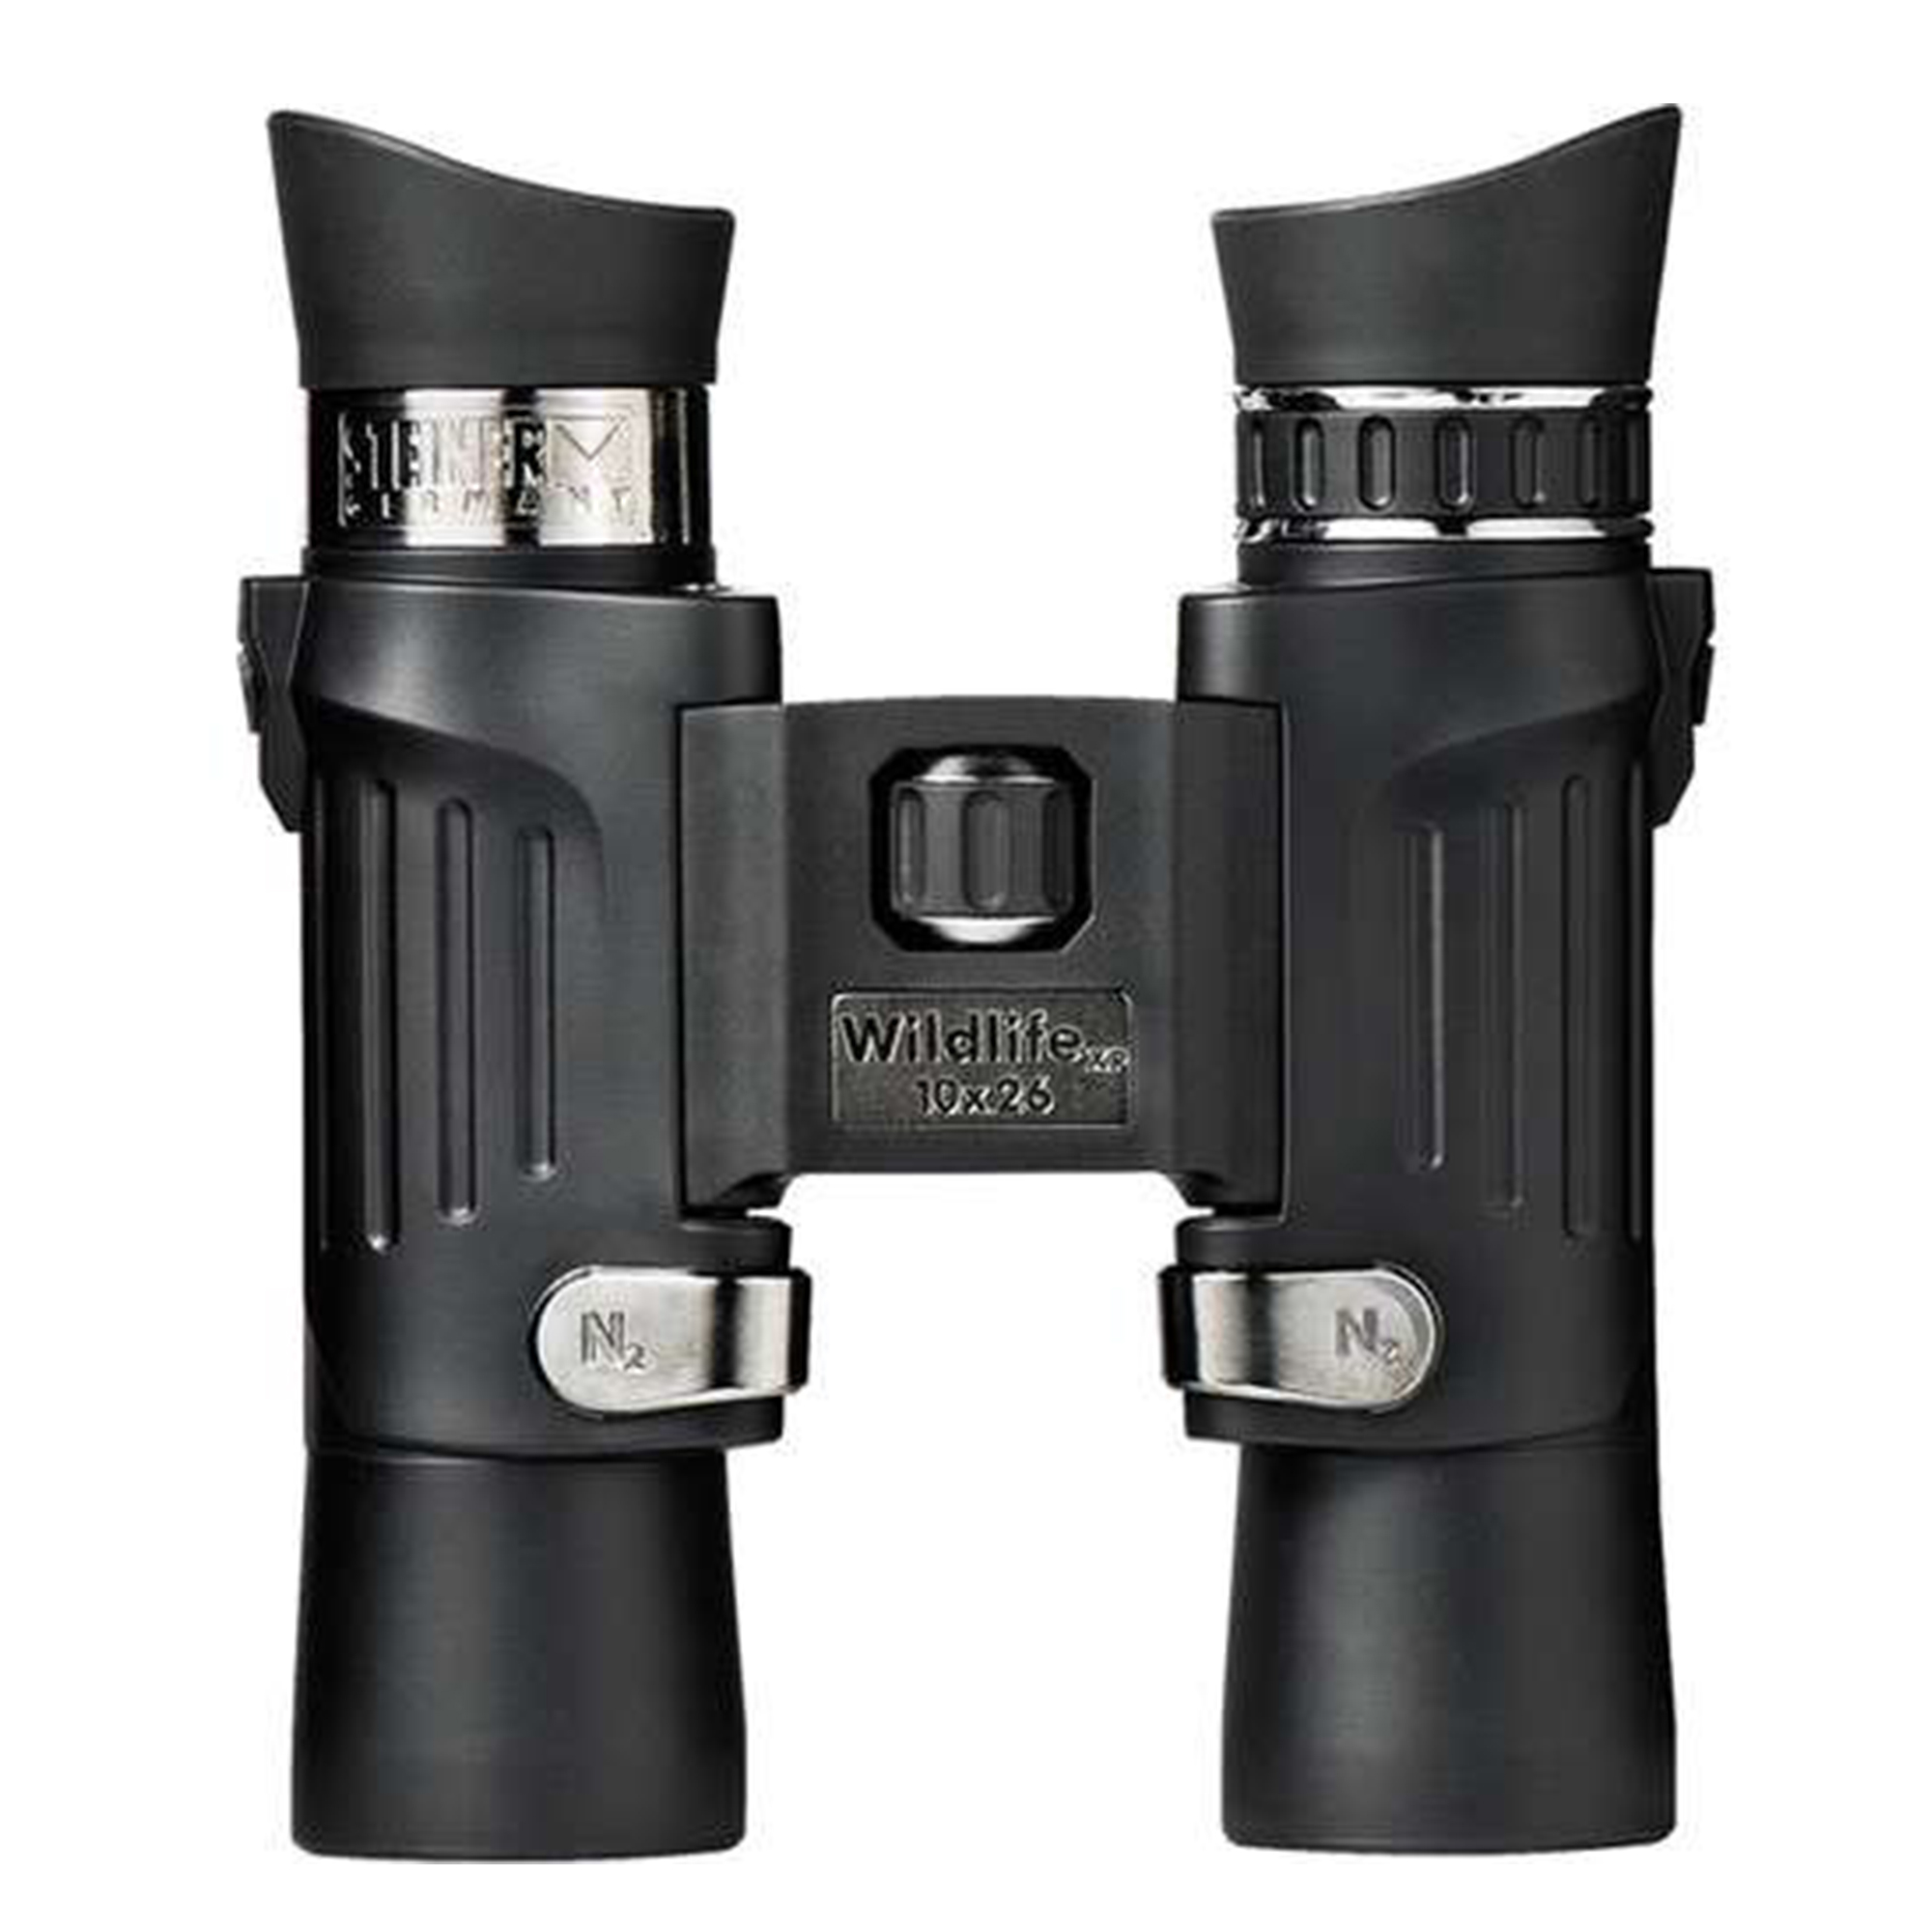 Steiner 10x26 Wildlife XP Compact Binocular